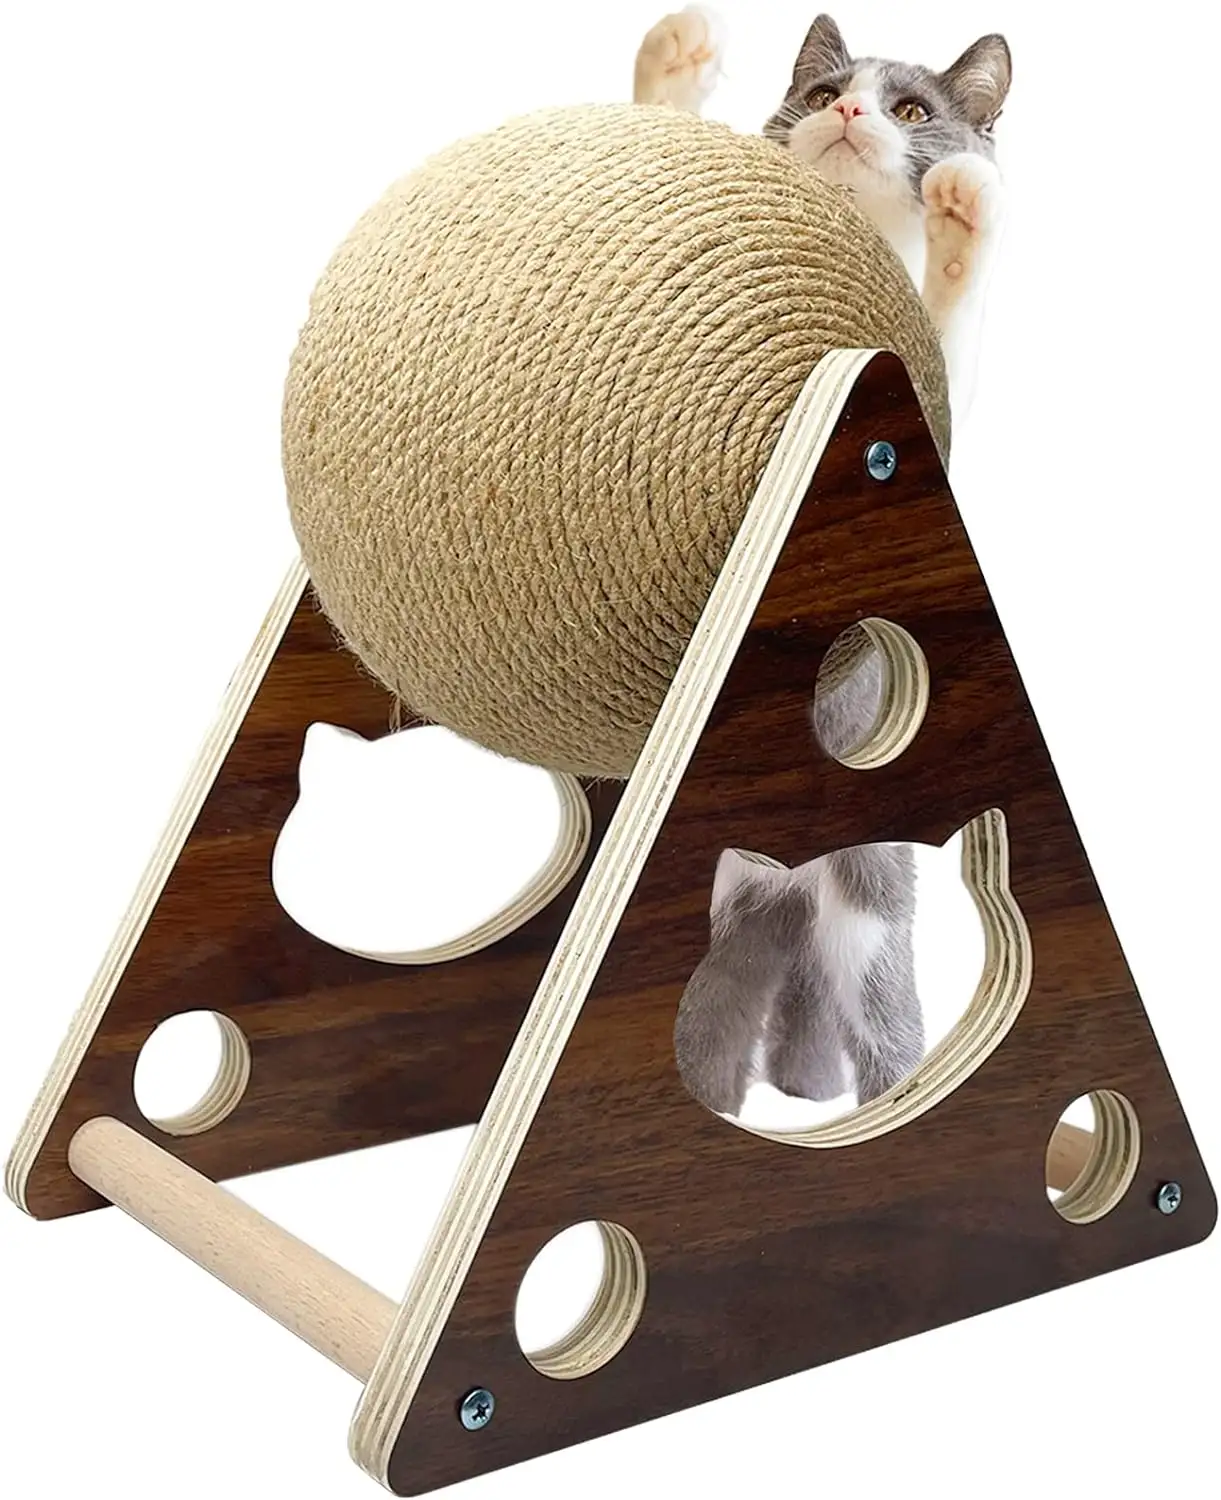 Jouet à gratter pour chat avec boule en sisal, cadre en bois naturel, durable, interactif